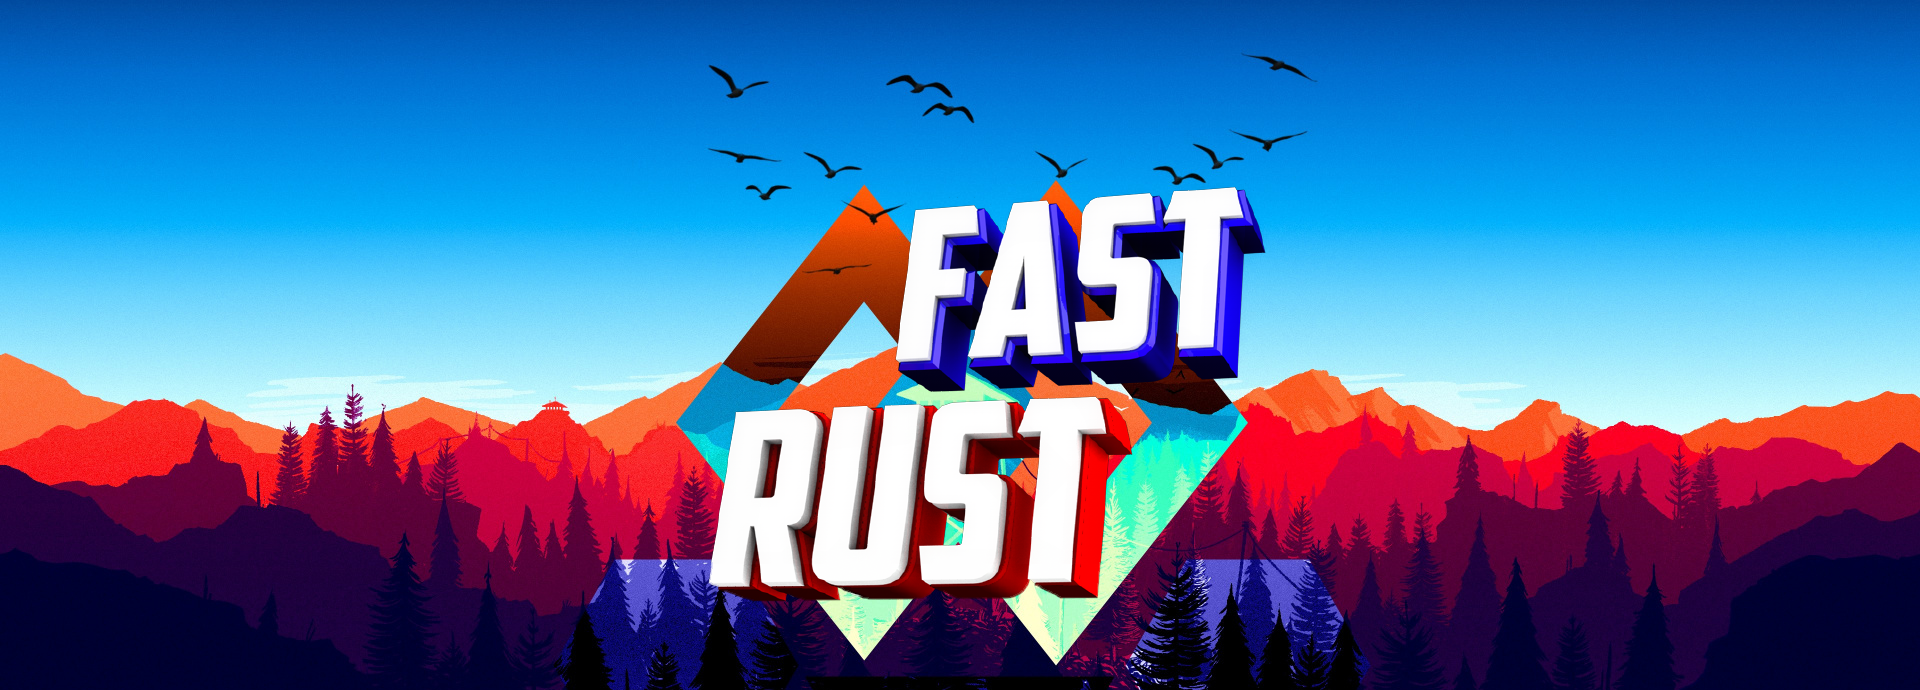 Rust casta fast custom фото 67